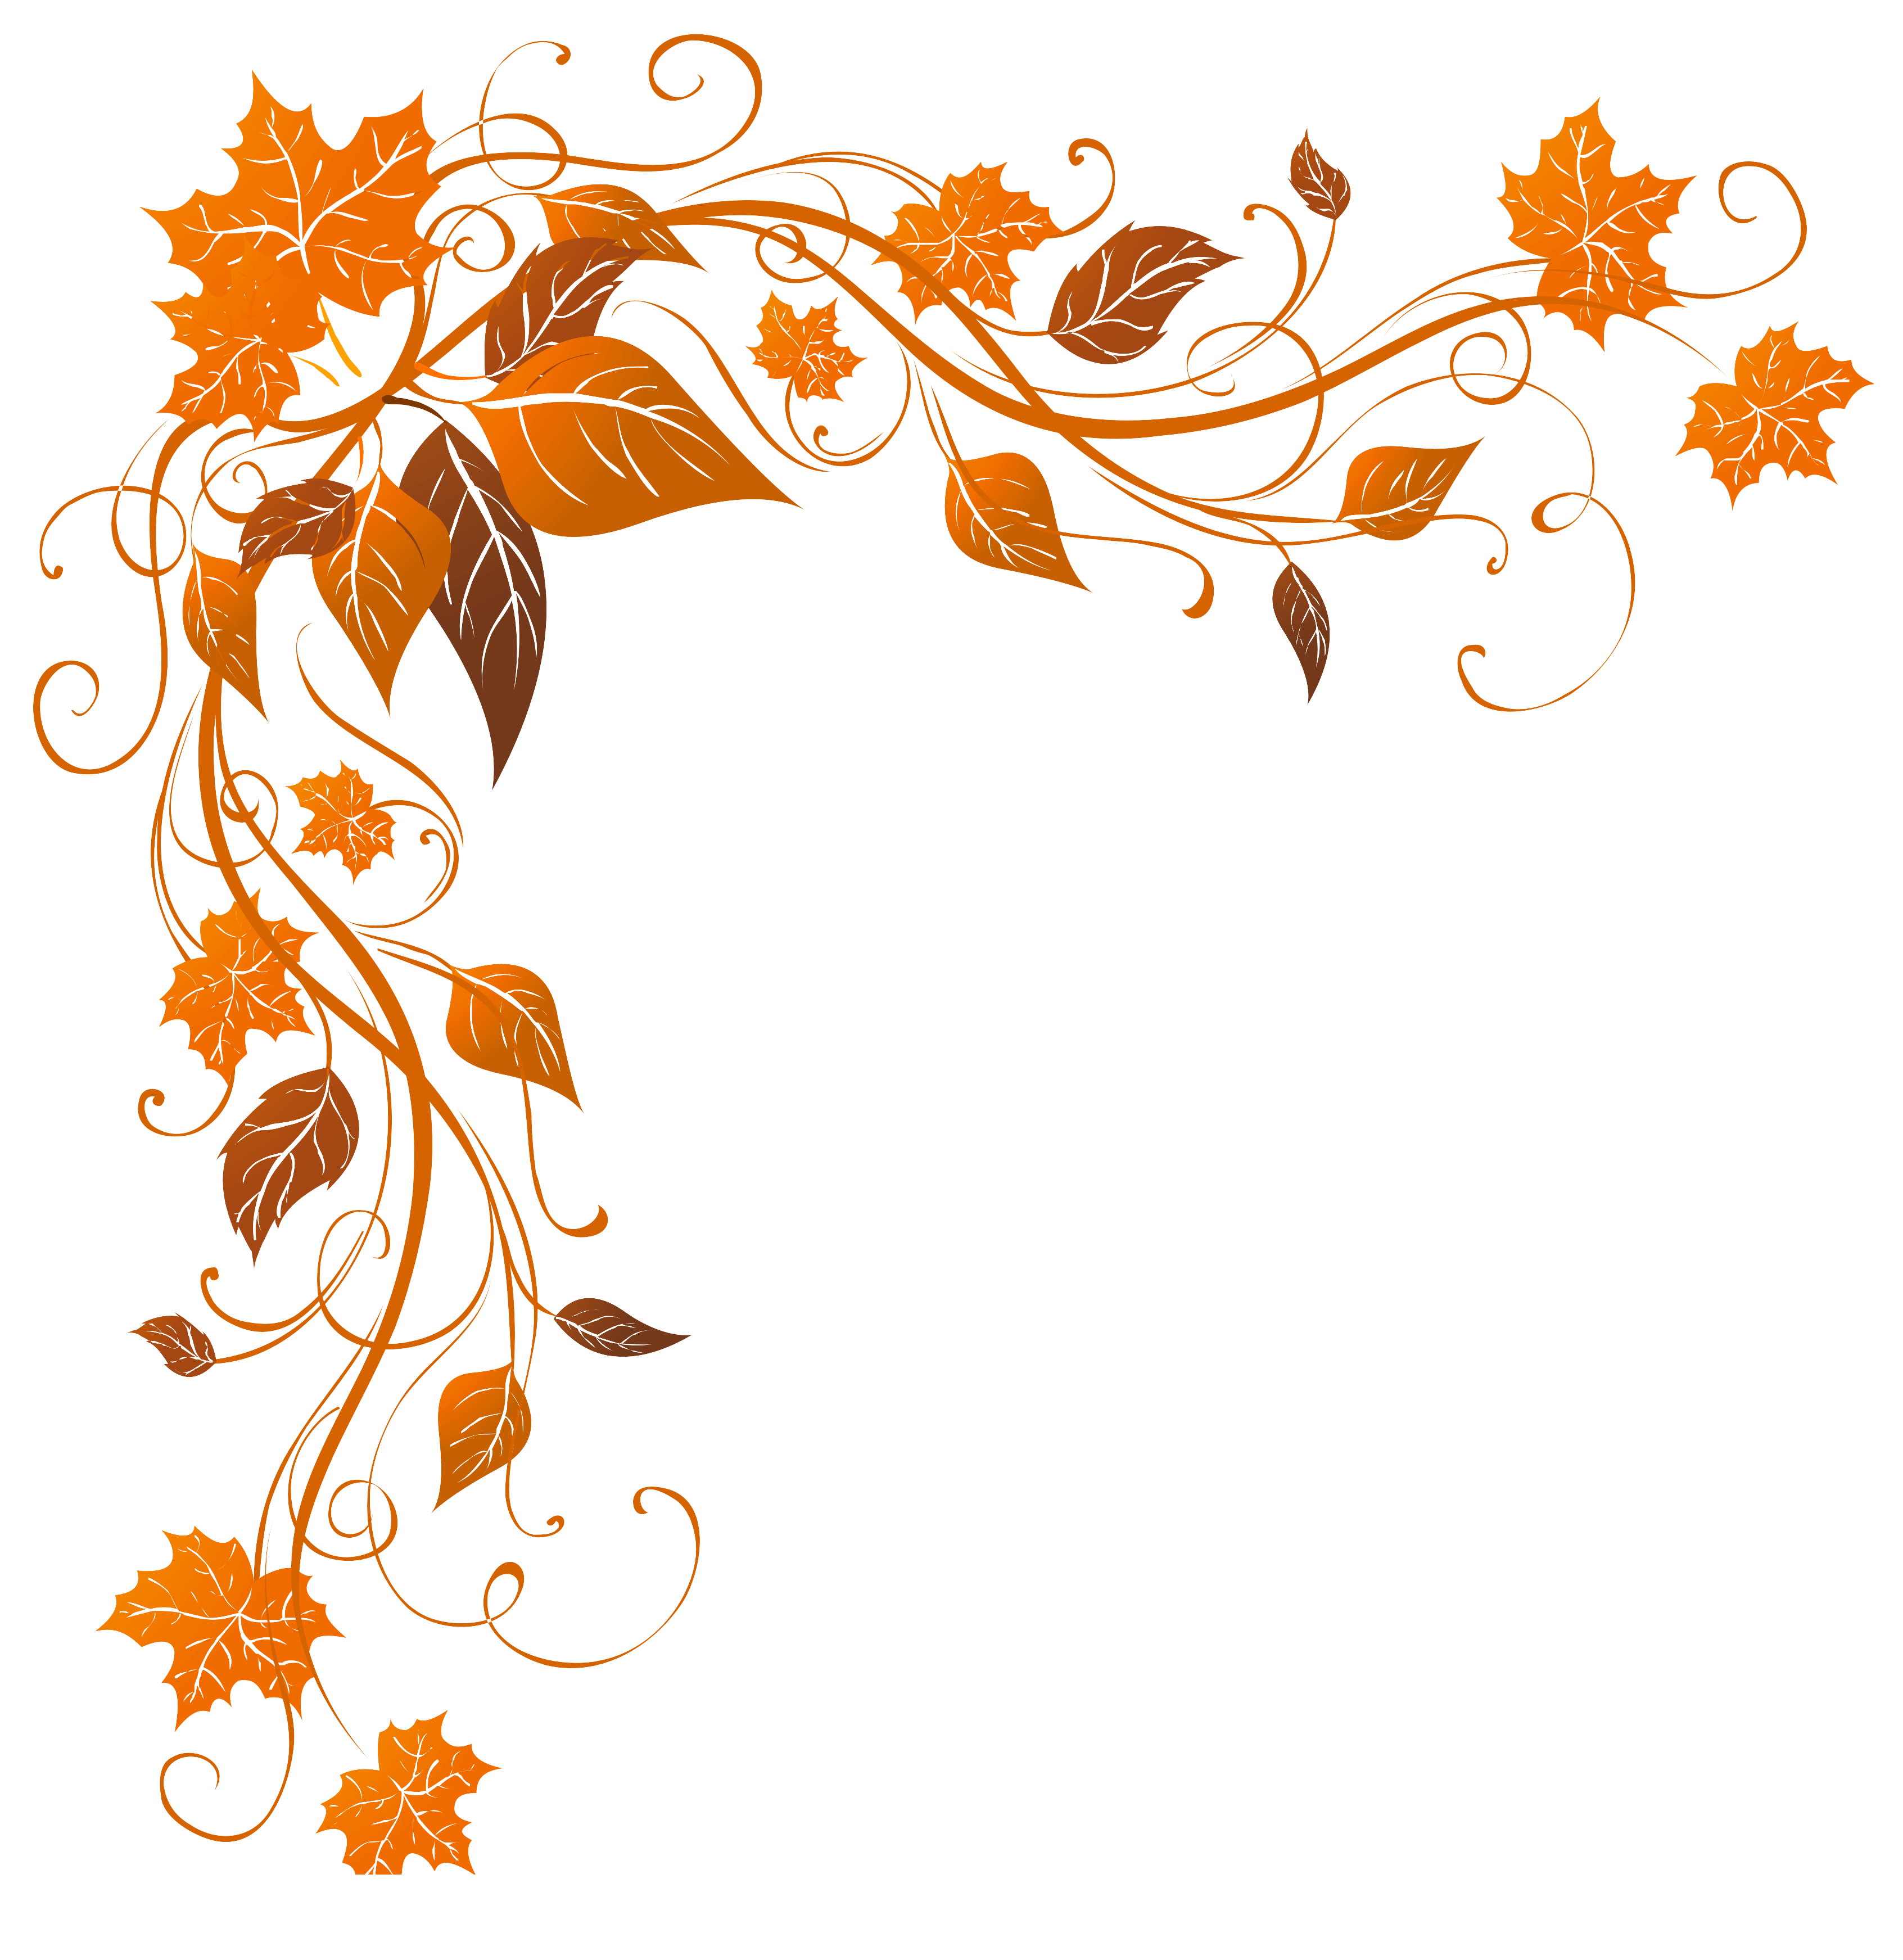 Transparent Autumn Decoration PNG Clipart Image. Fall clip art, Clip art borders, Fall borders